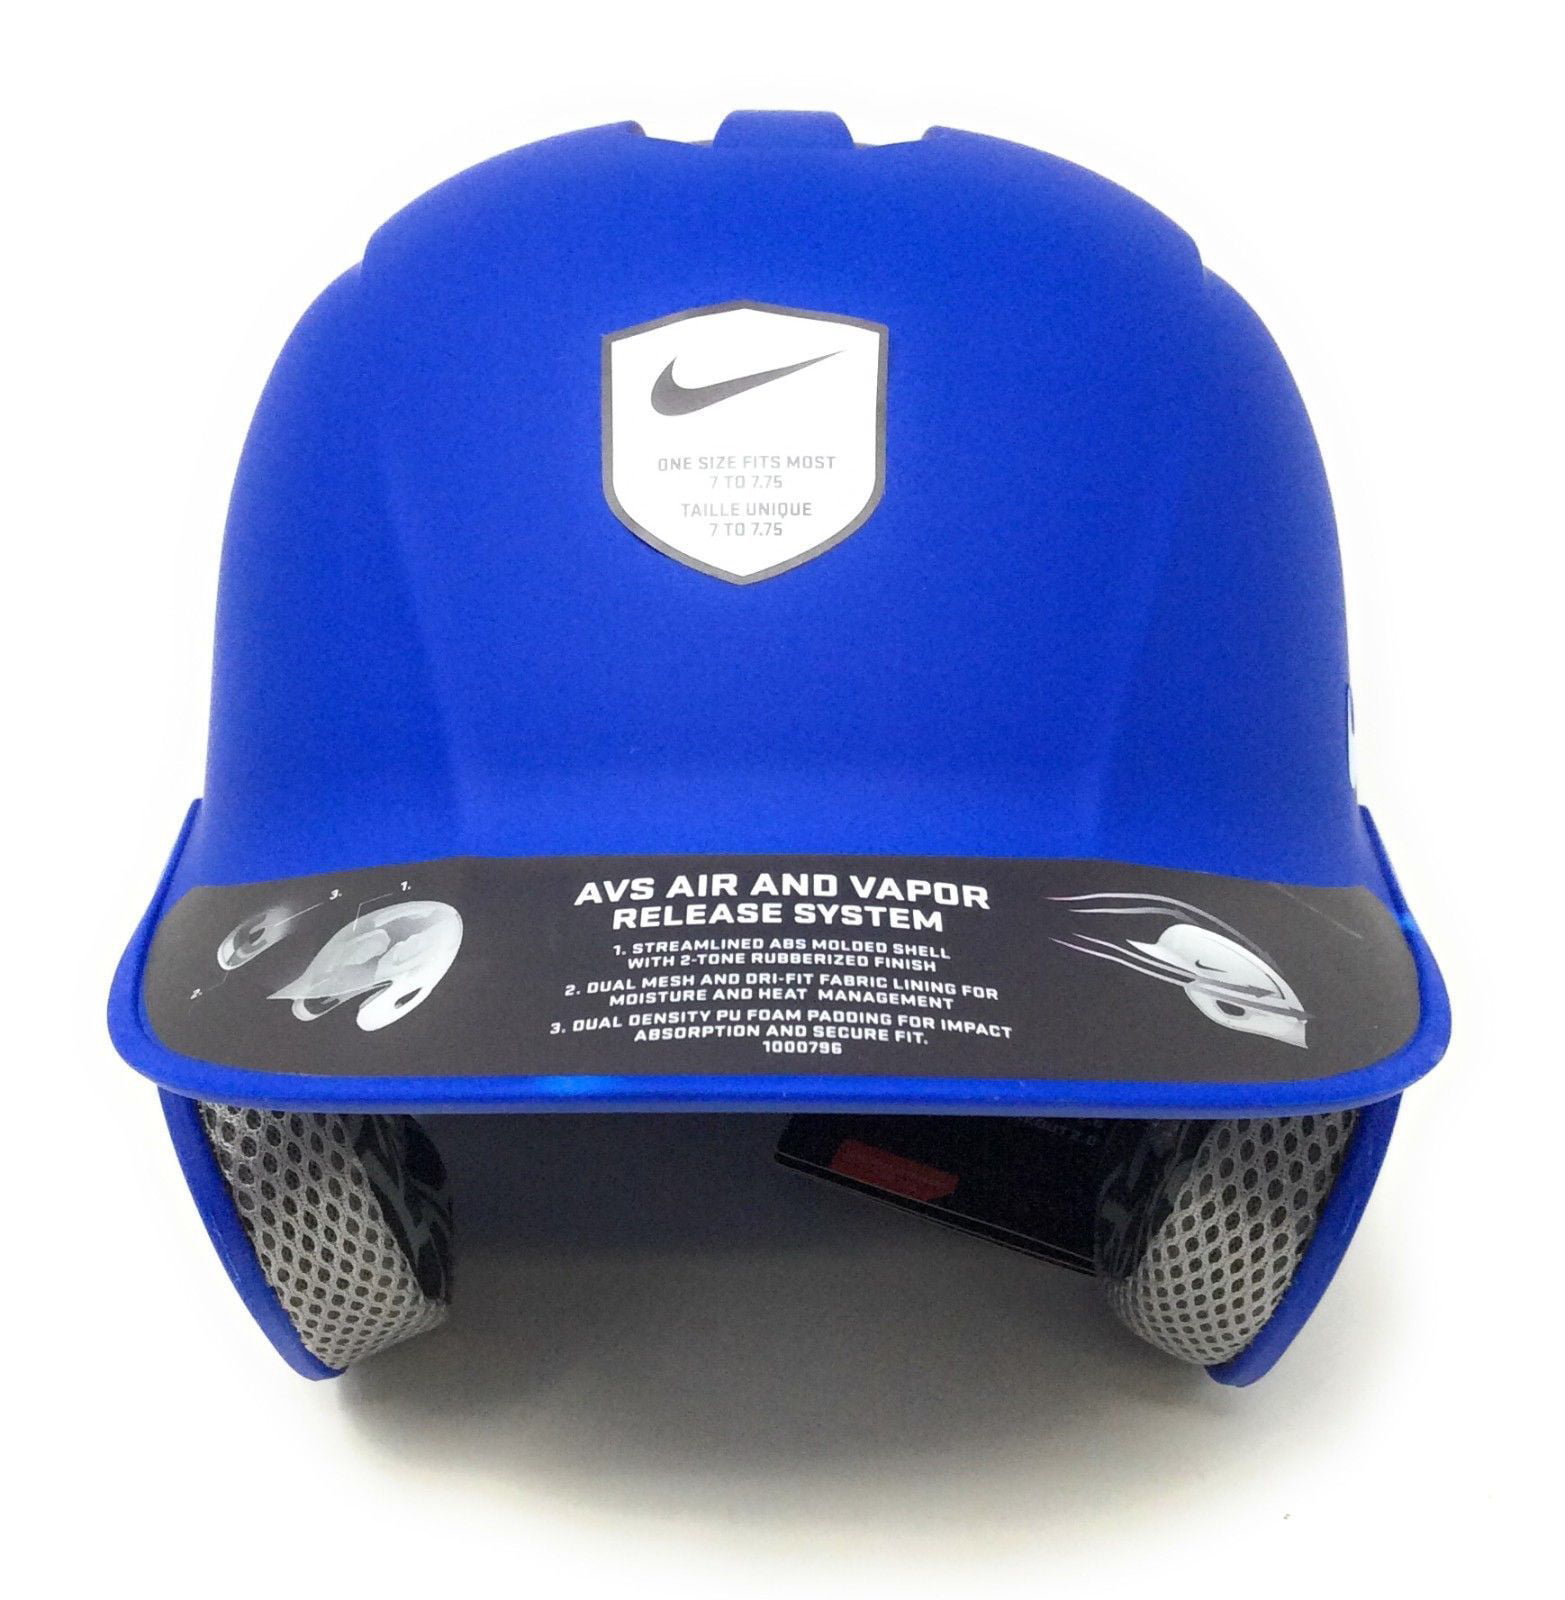 nike breakout 2.0 baseball helmet